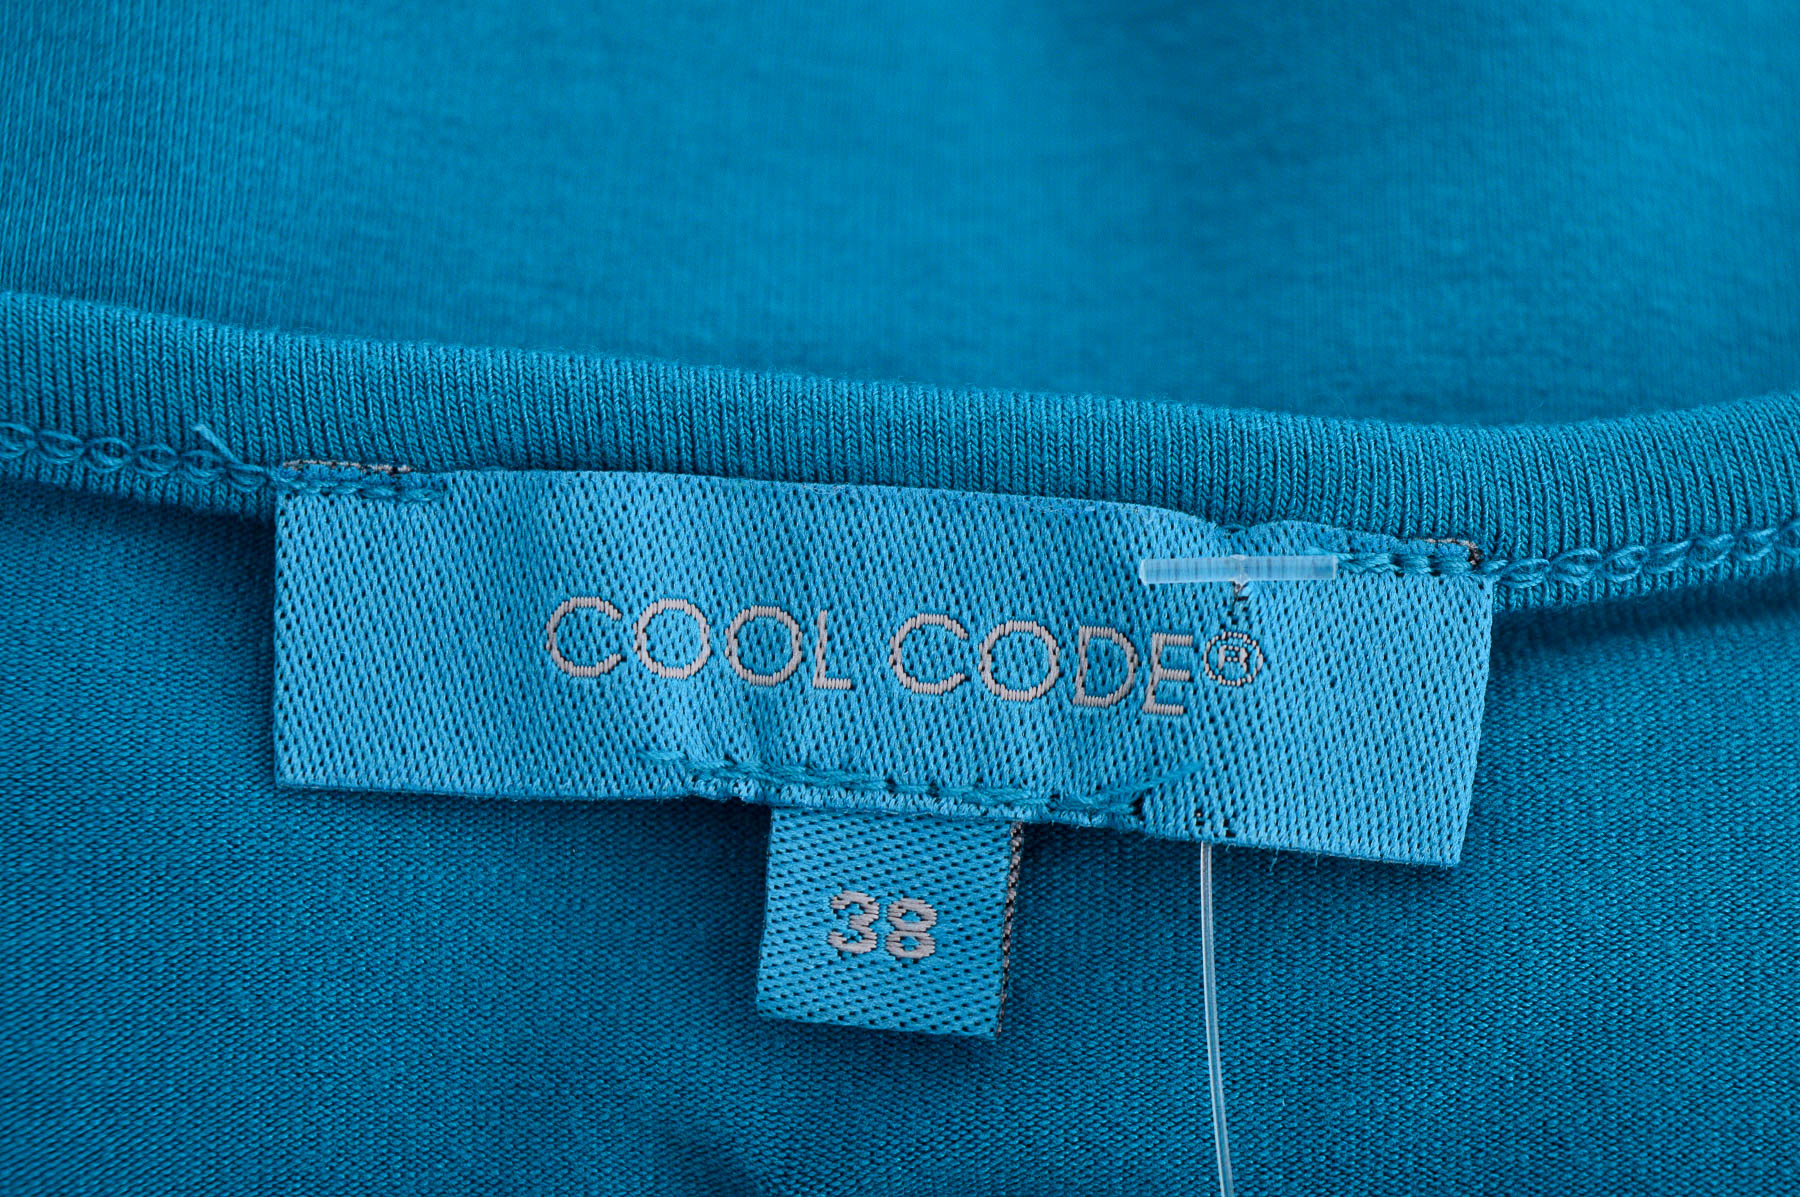 Дамска тениска - COOL CODE - 2